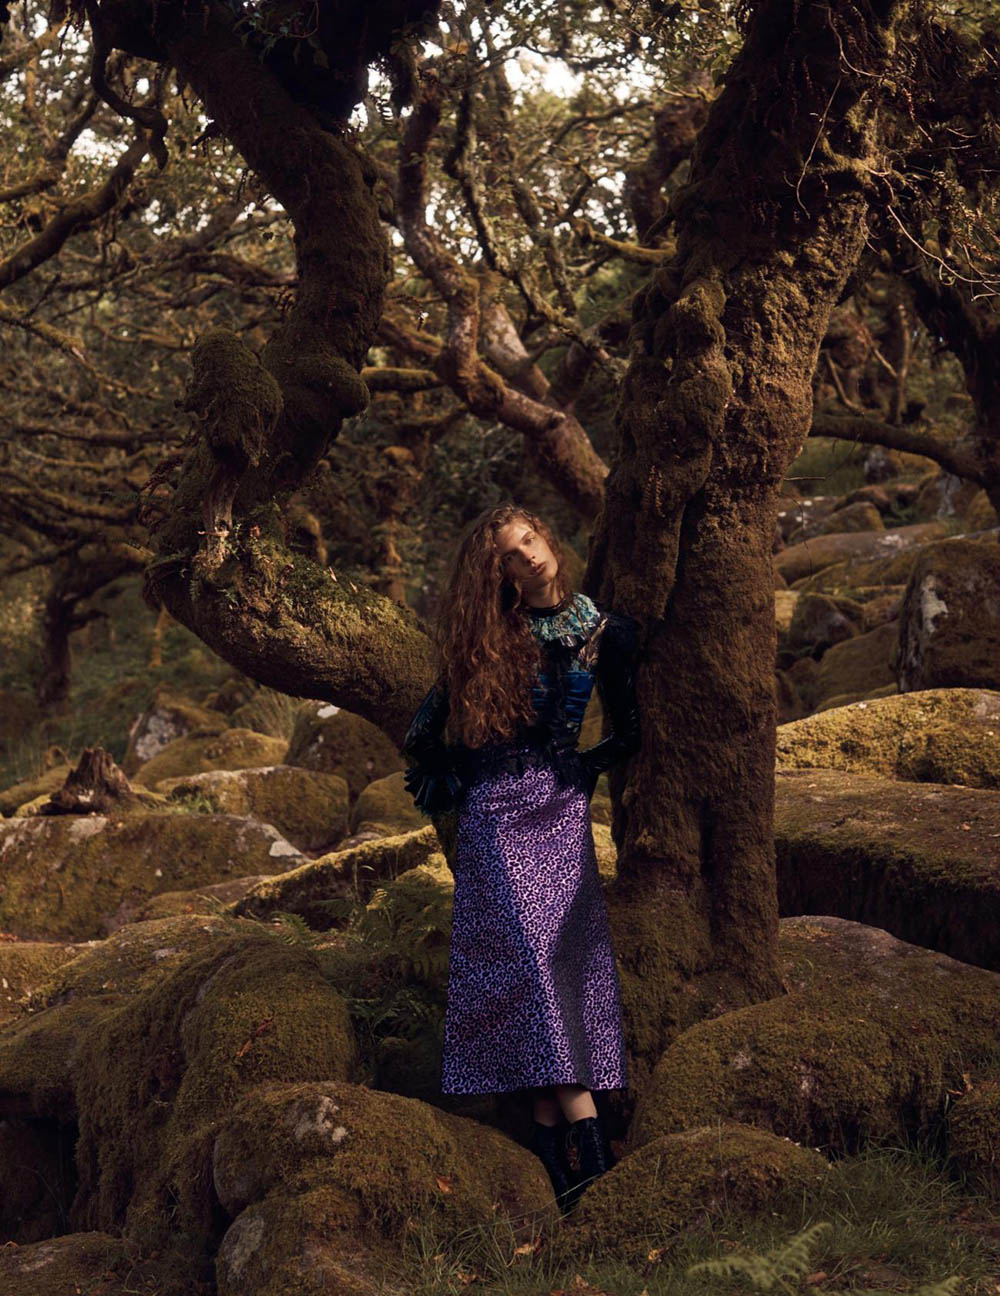 Carolina Burgin by Emma Tempest for Vogue Spain October 2019